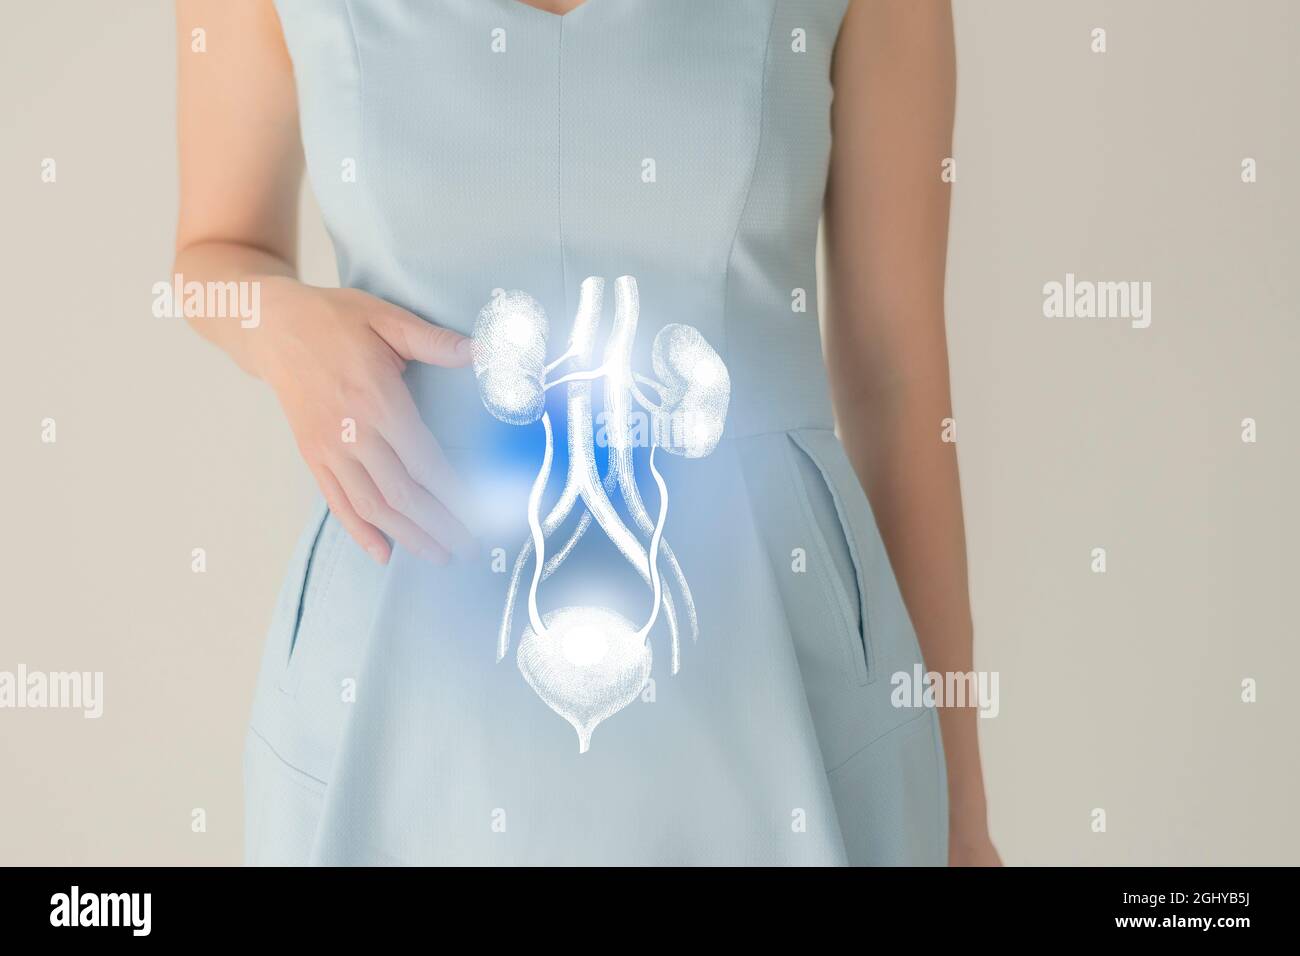 Nicht erkennbare weibliche Patientin in blauer Kleidung, hervorgehobenes, von Hand gezeichnetes Nierensystem in den Händen. Das menschliche Nierensystem stellt ein Konzept dar. Stockfoto